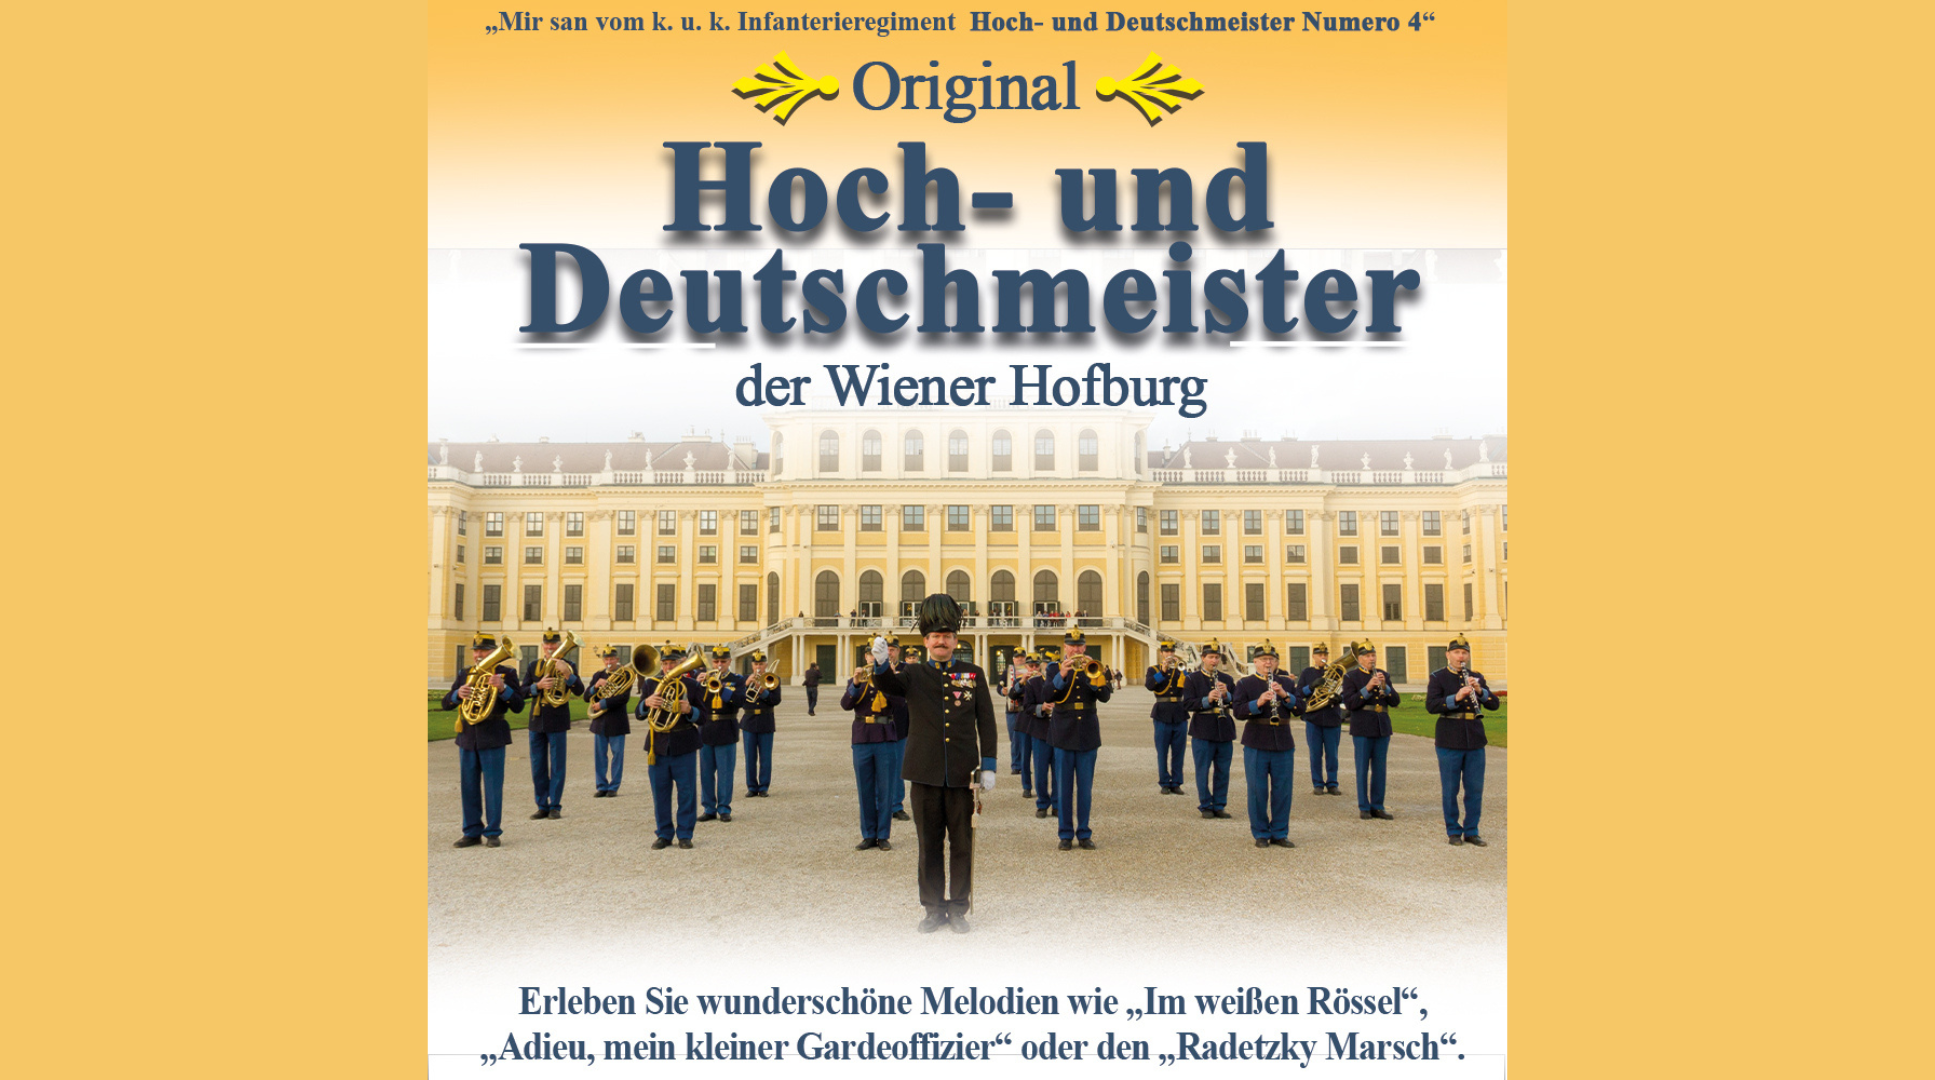 Hoch- und Deutschmeister der Wiener Hofburg marschieren ein